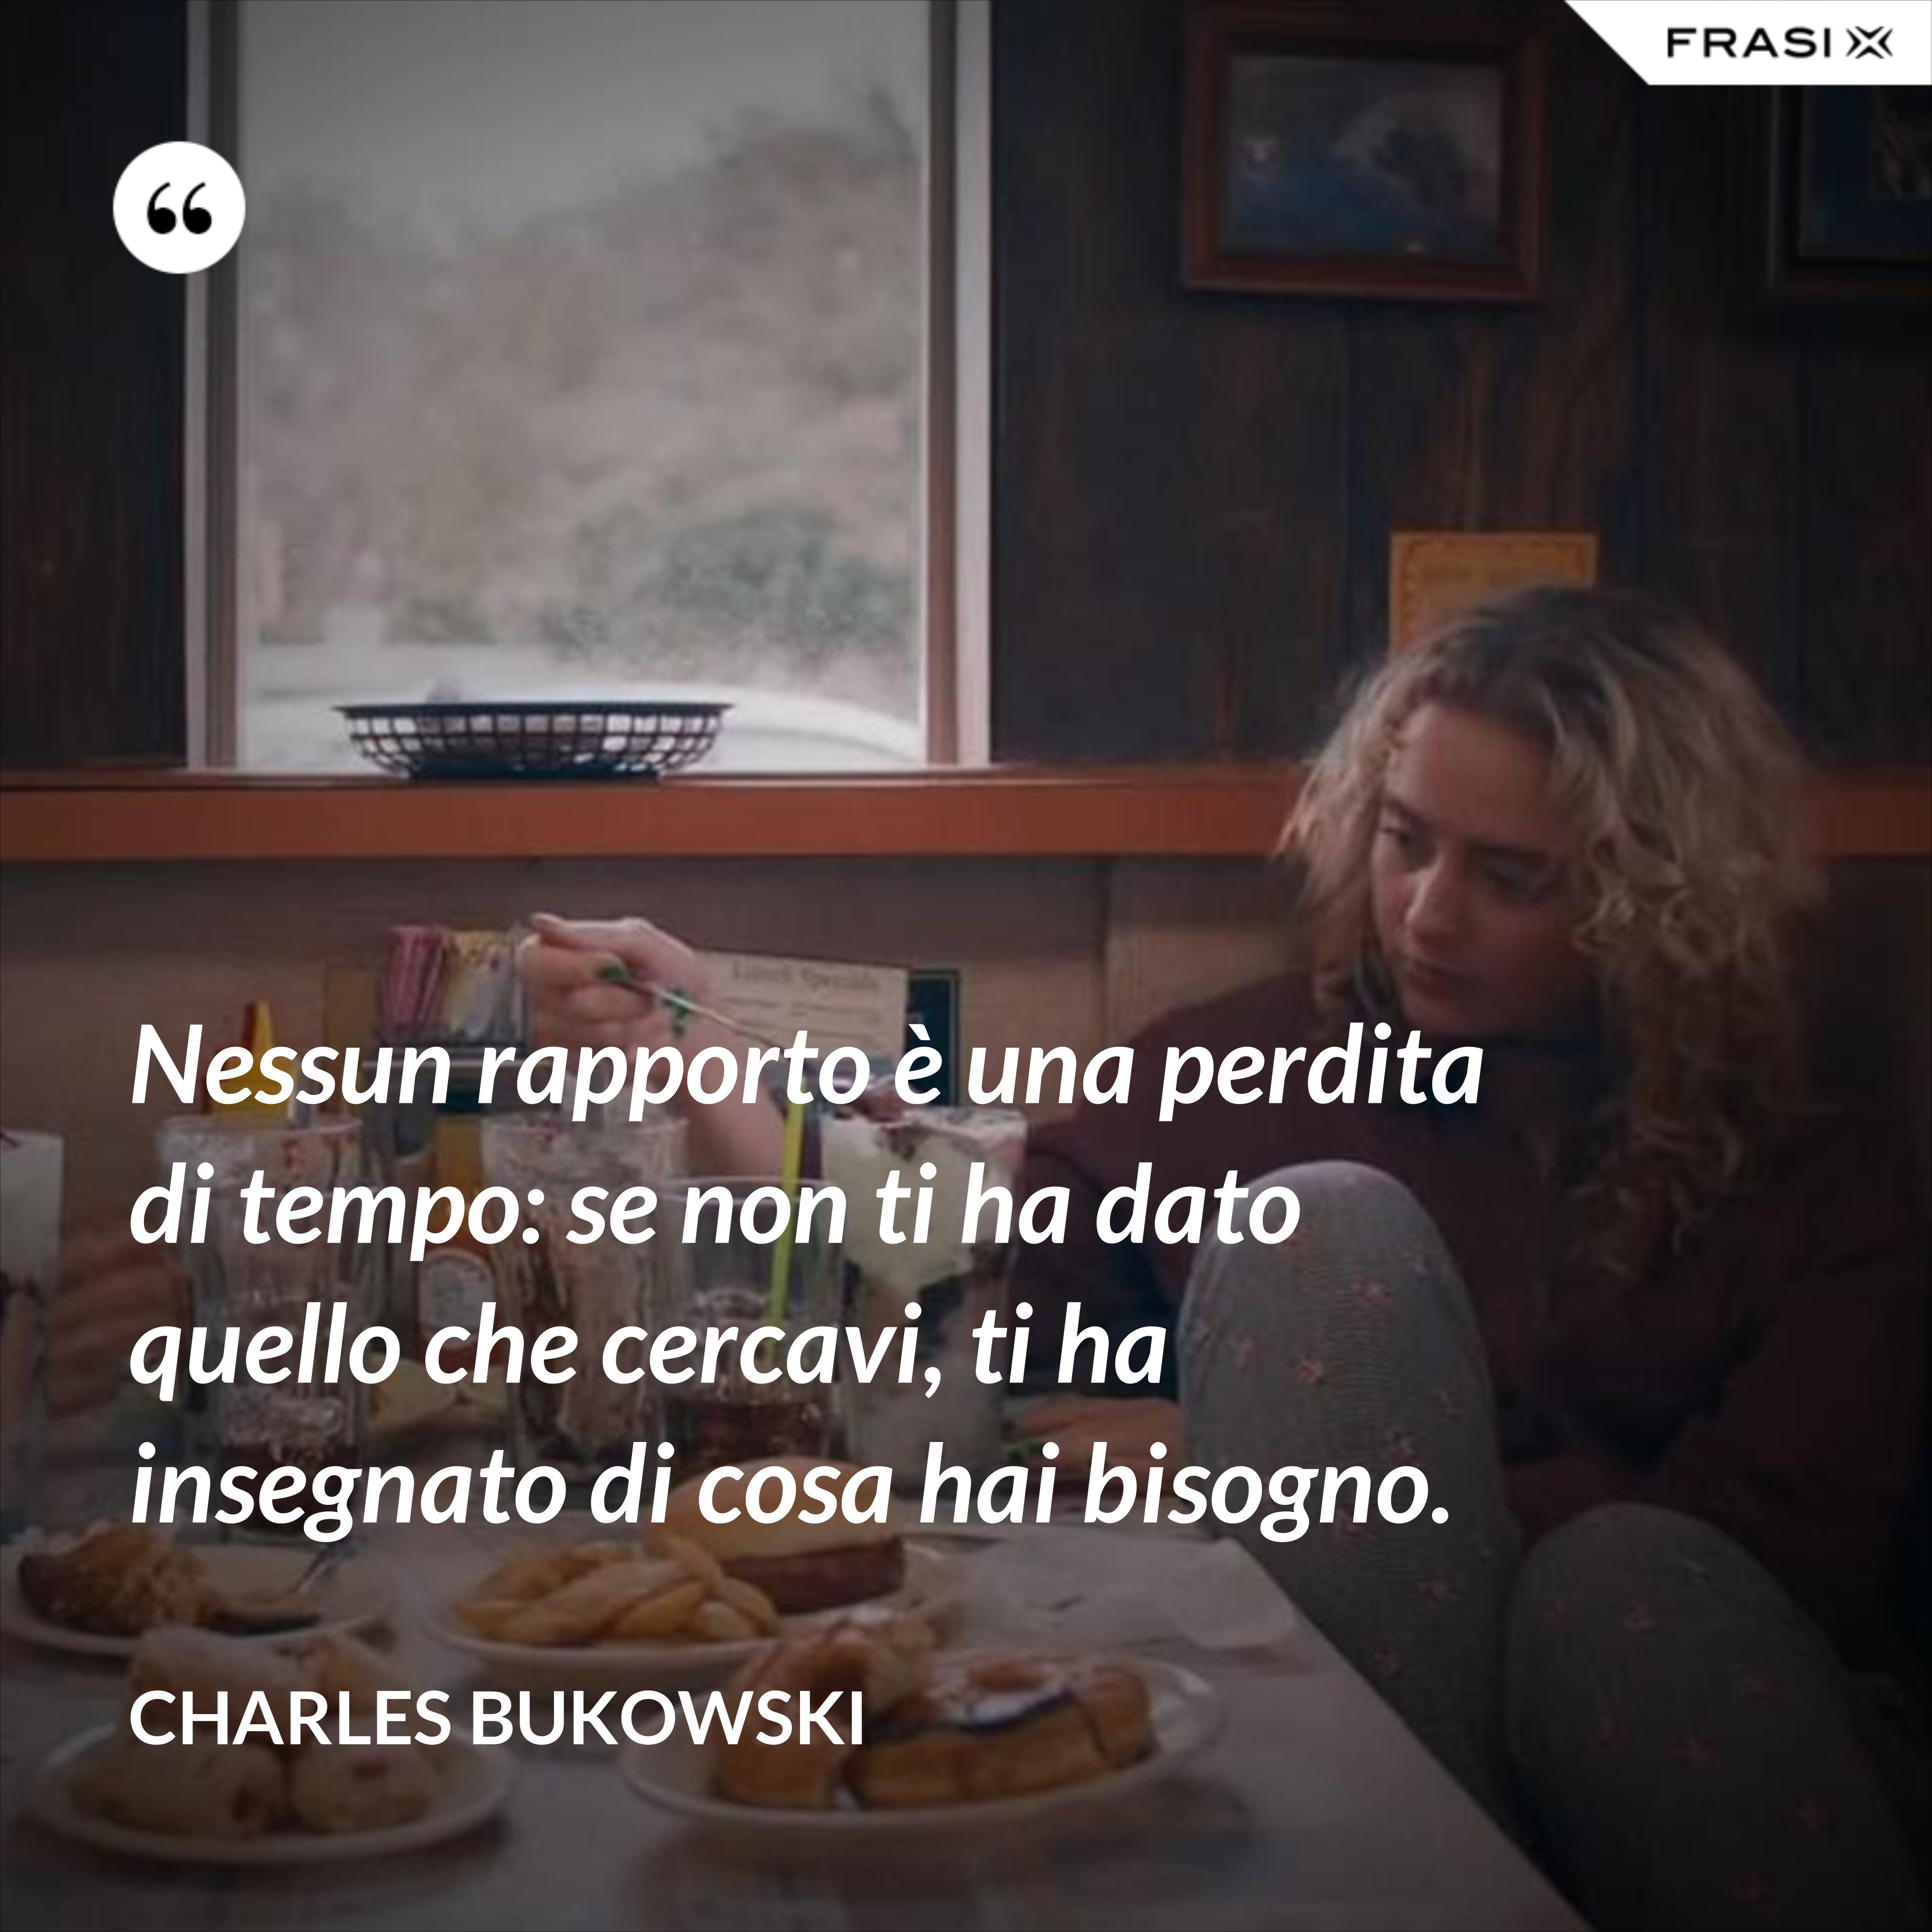 Nessun rapporto è una perdita di tempo: se non ti ha dato quello che cercavi, ti ha insegnato di cosa hai bisogno. - Charles Bukowski